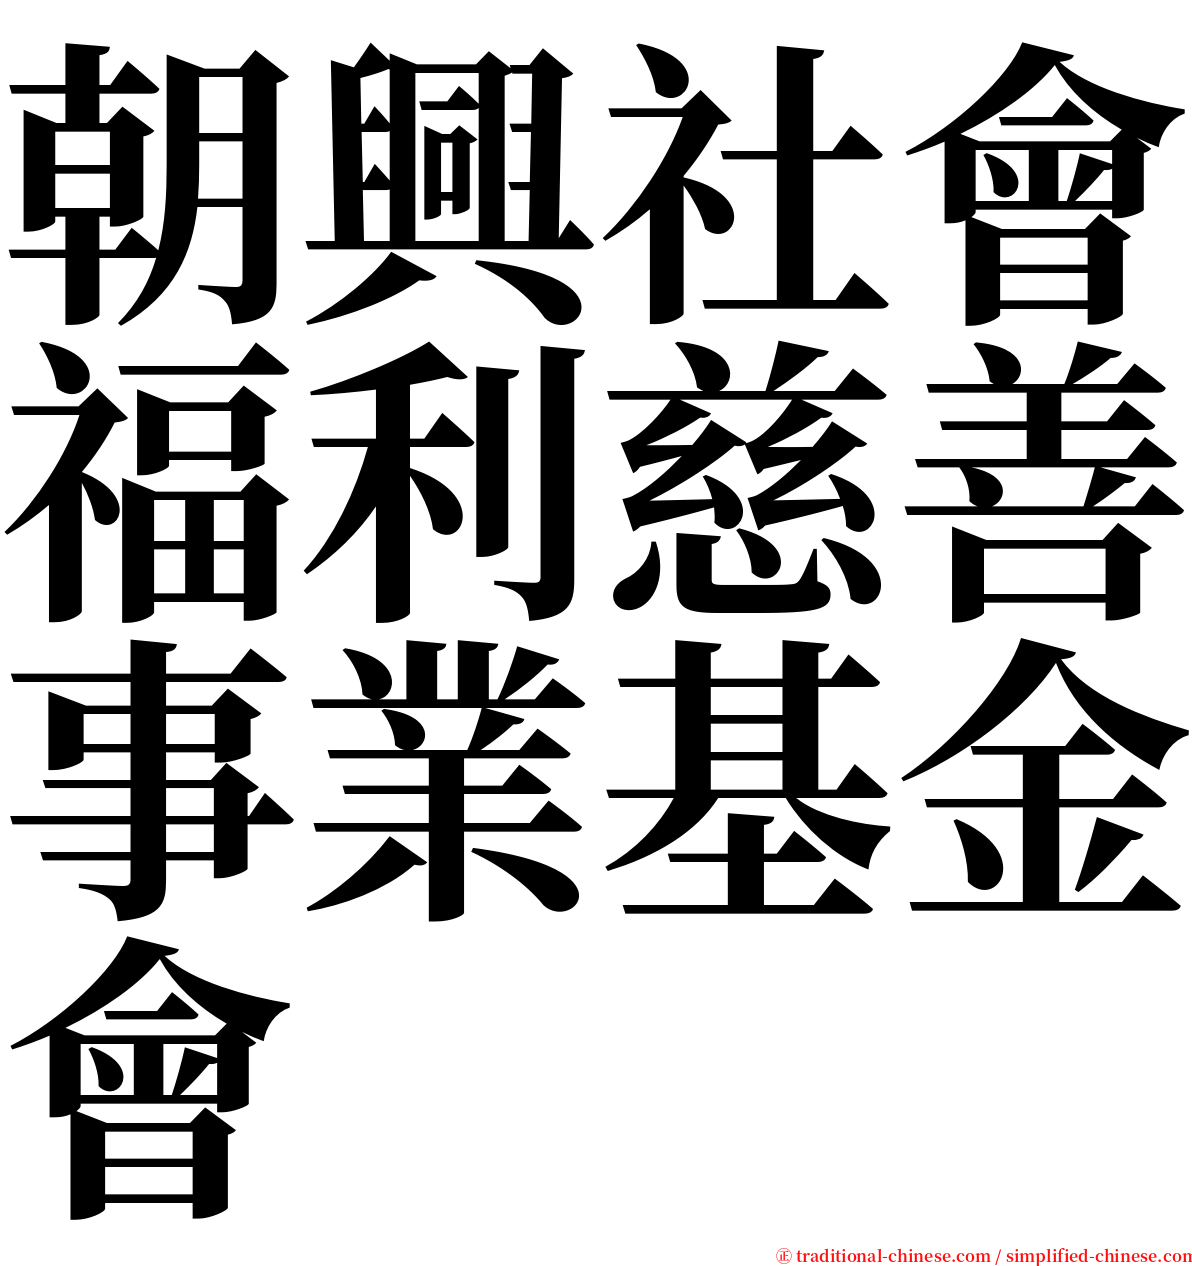 朝興社會福利慈善事業基金會 serif font